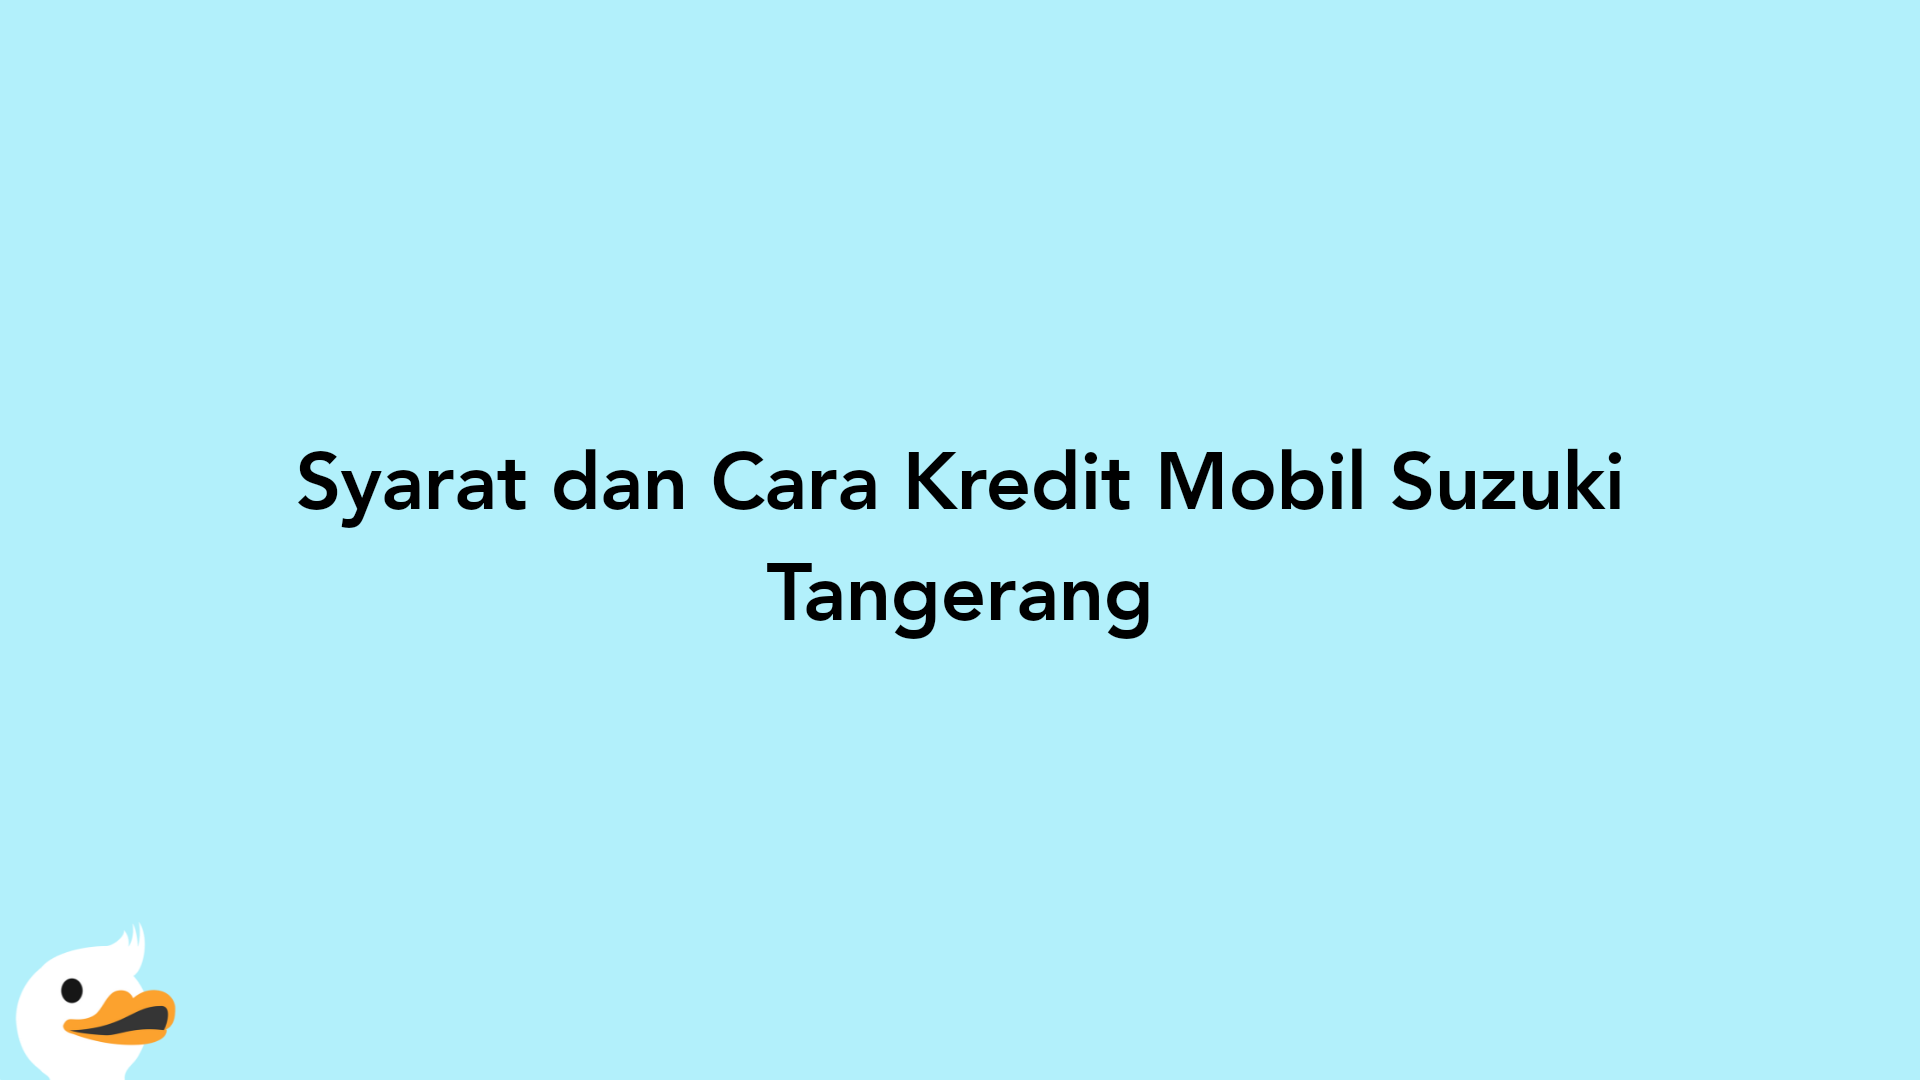 Syarat dan Cara Kredit Mobil Suzuki Tangerang